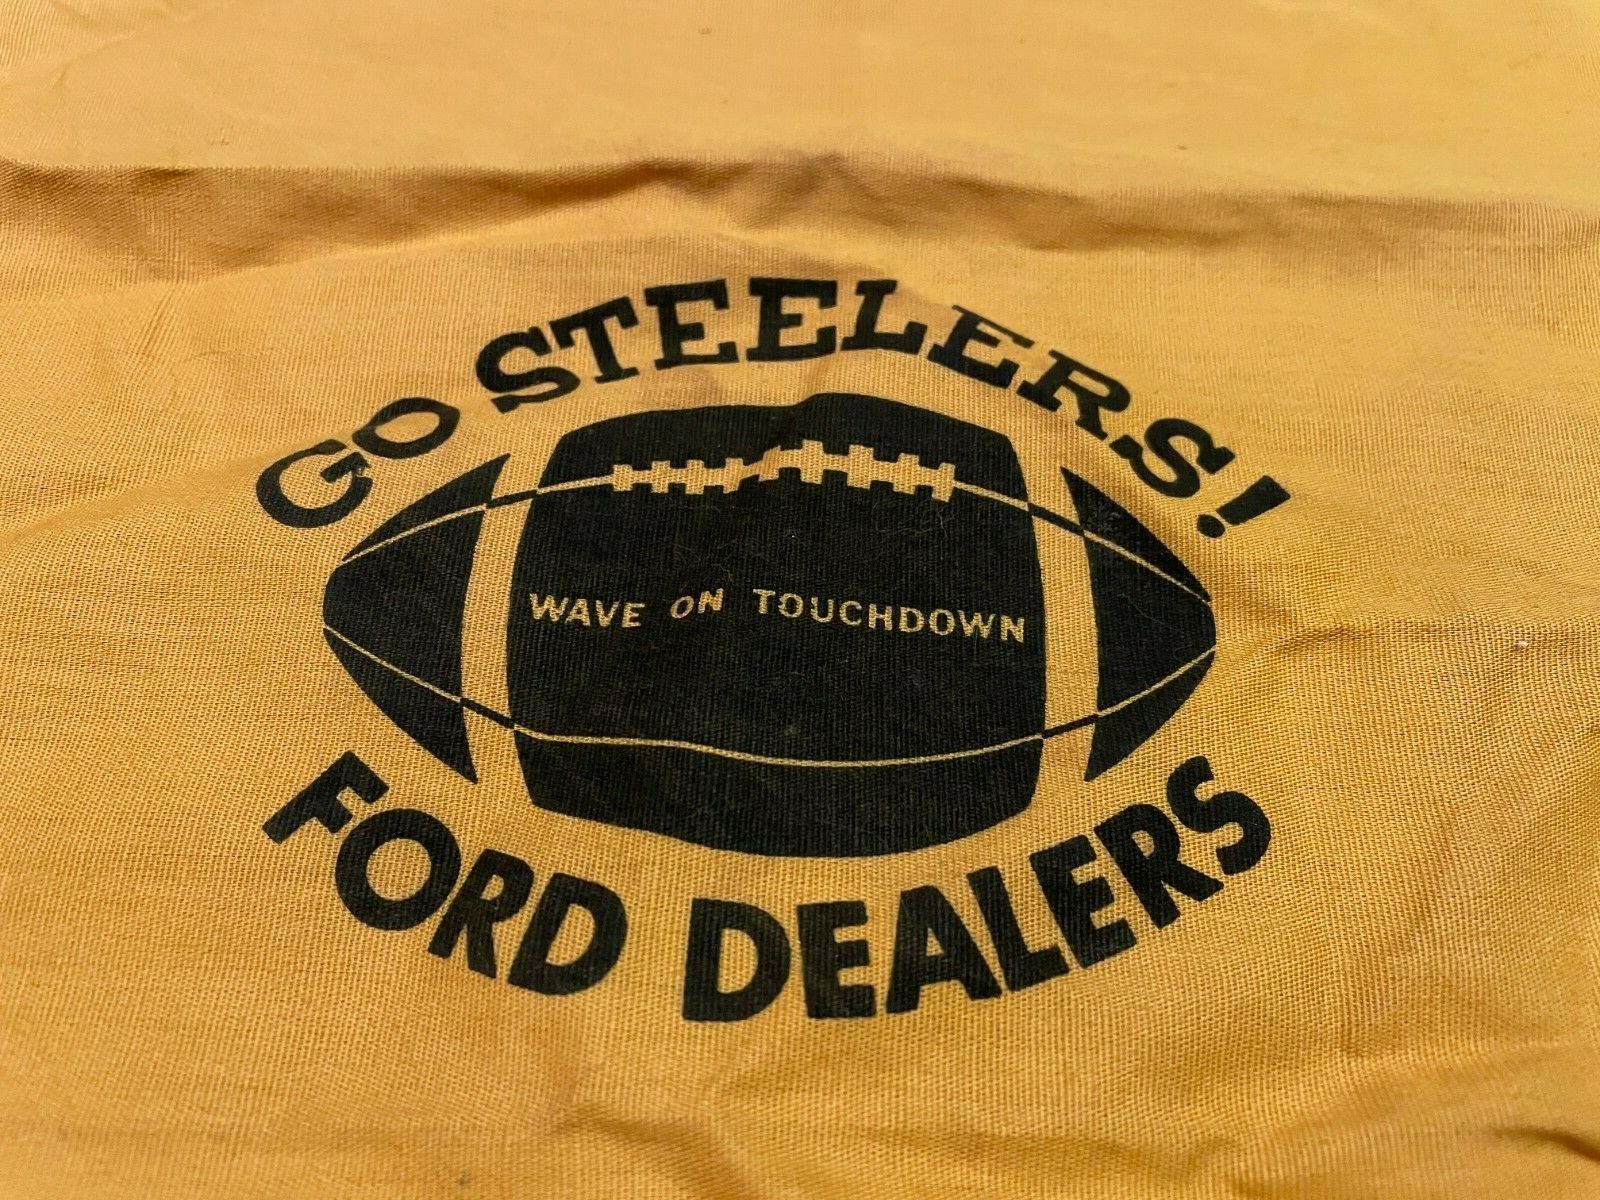 Pittsburgh Steelers Vintage Rally Rag Terrible Towel Ford Dealership Go Steelers